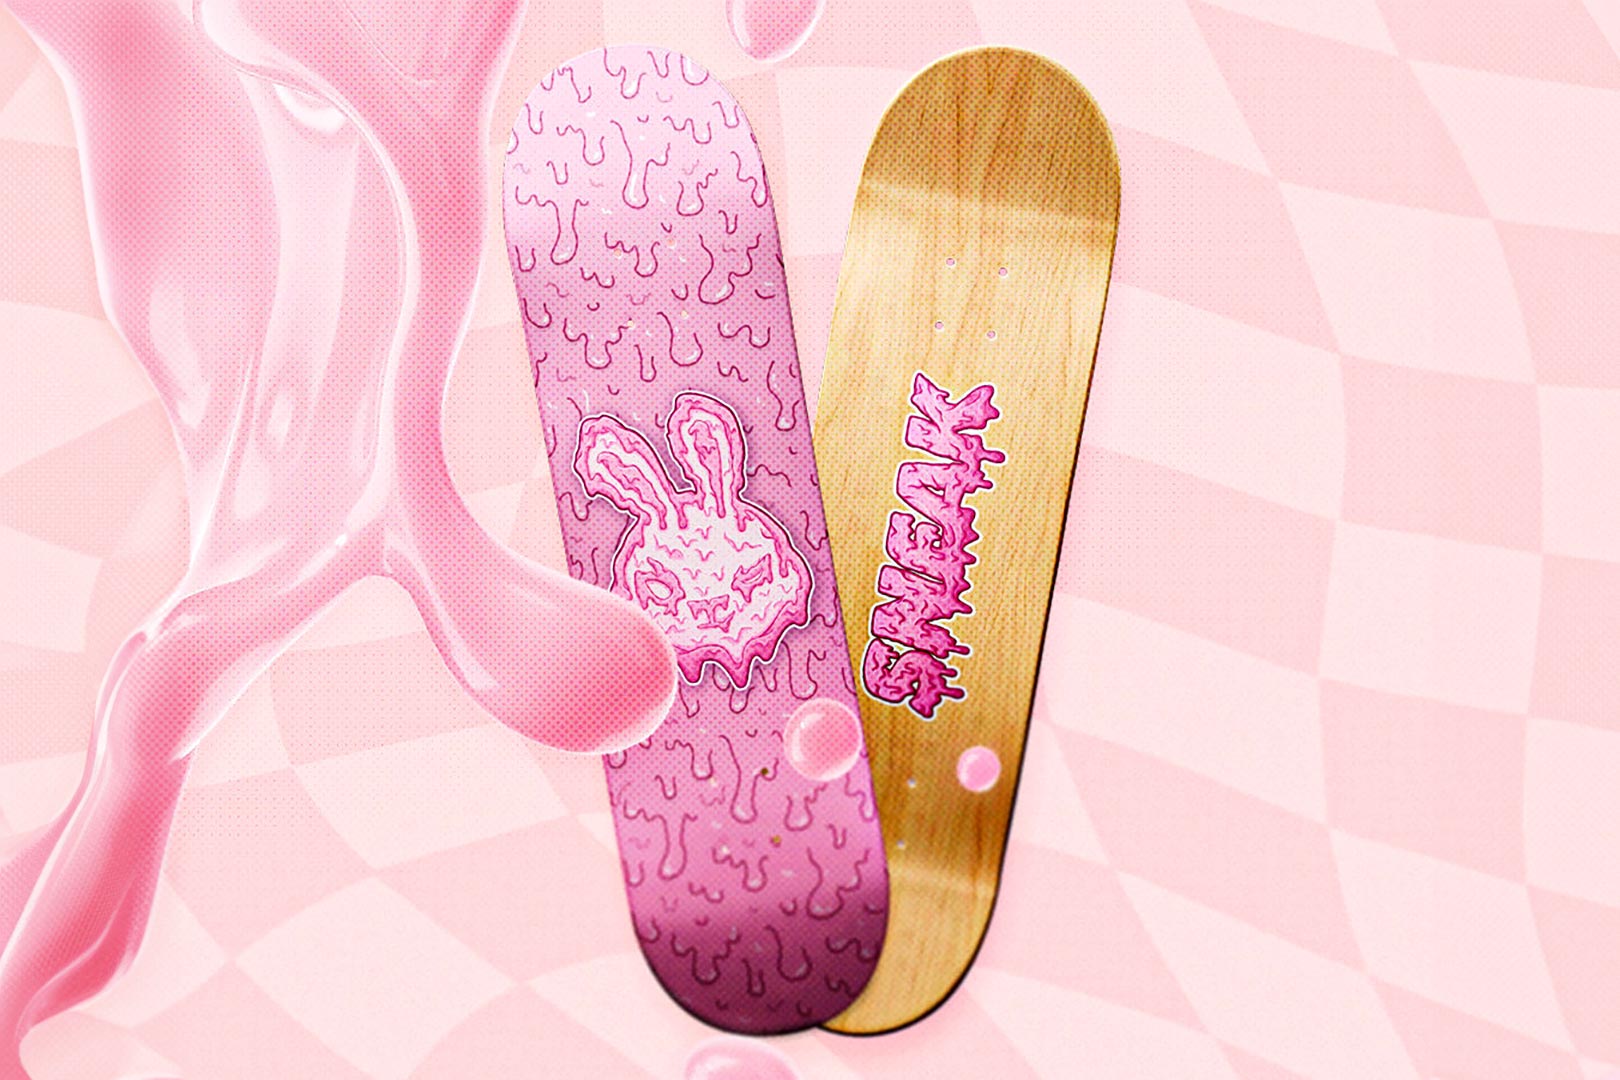 Custom Skateboard For Sneak Shake